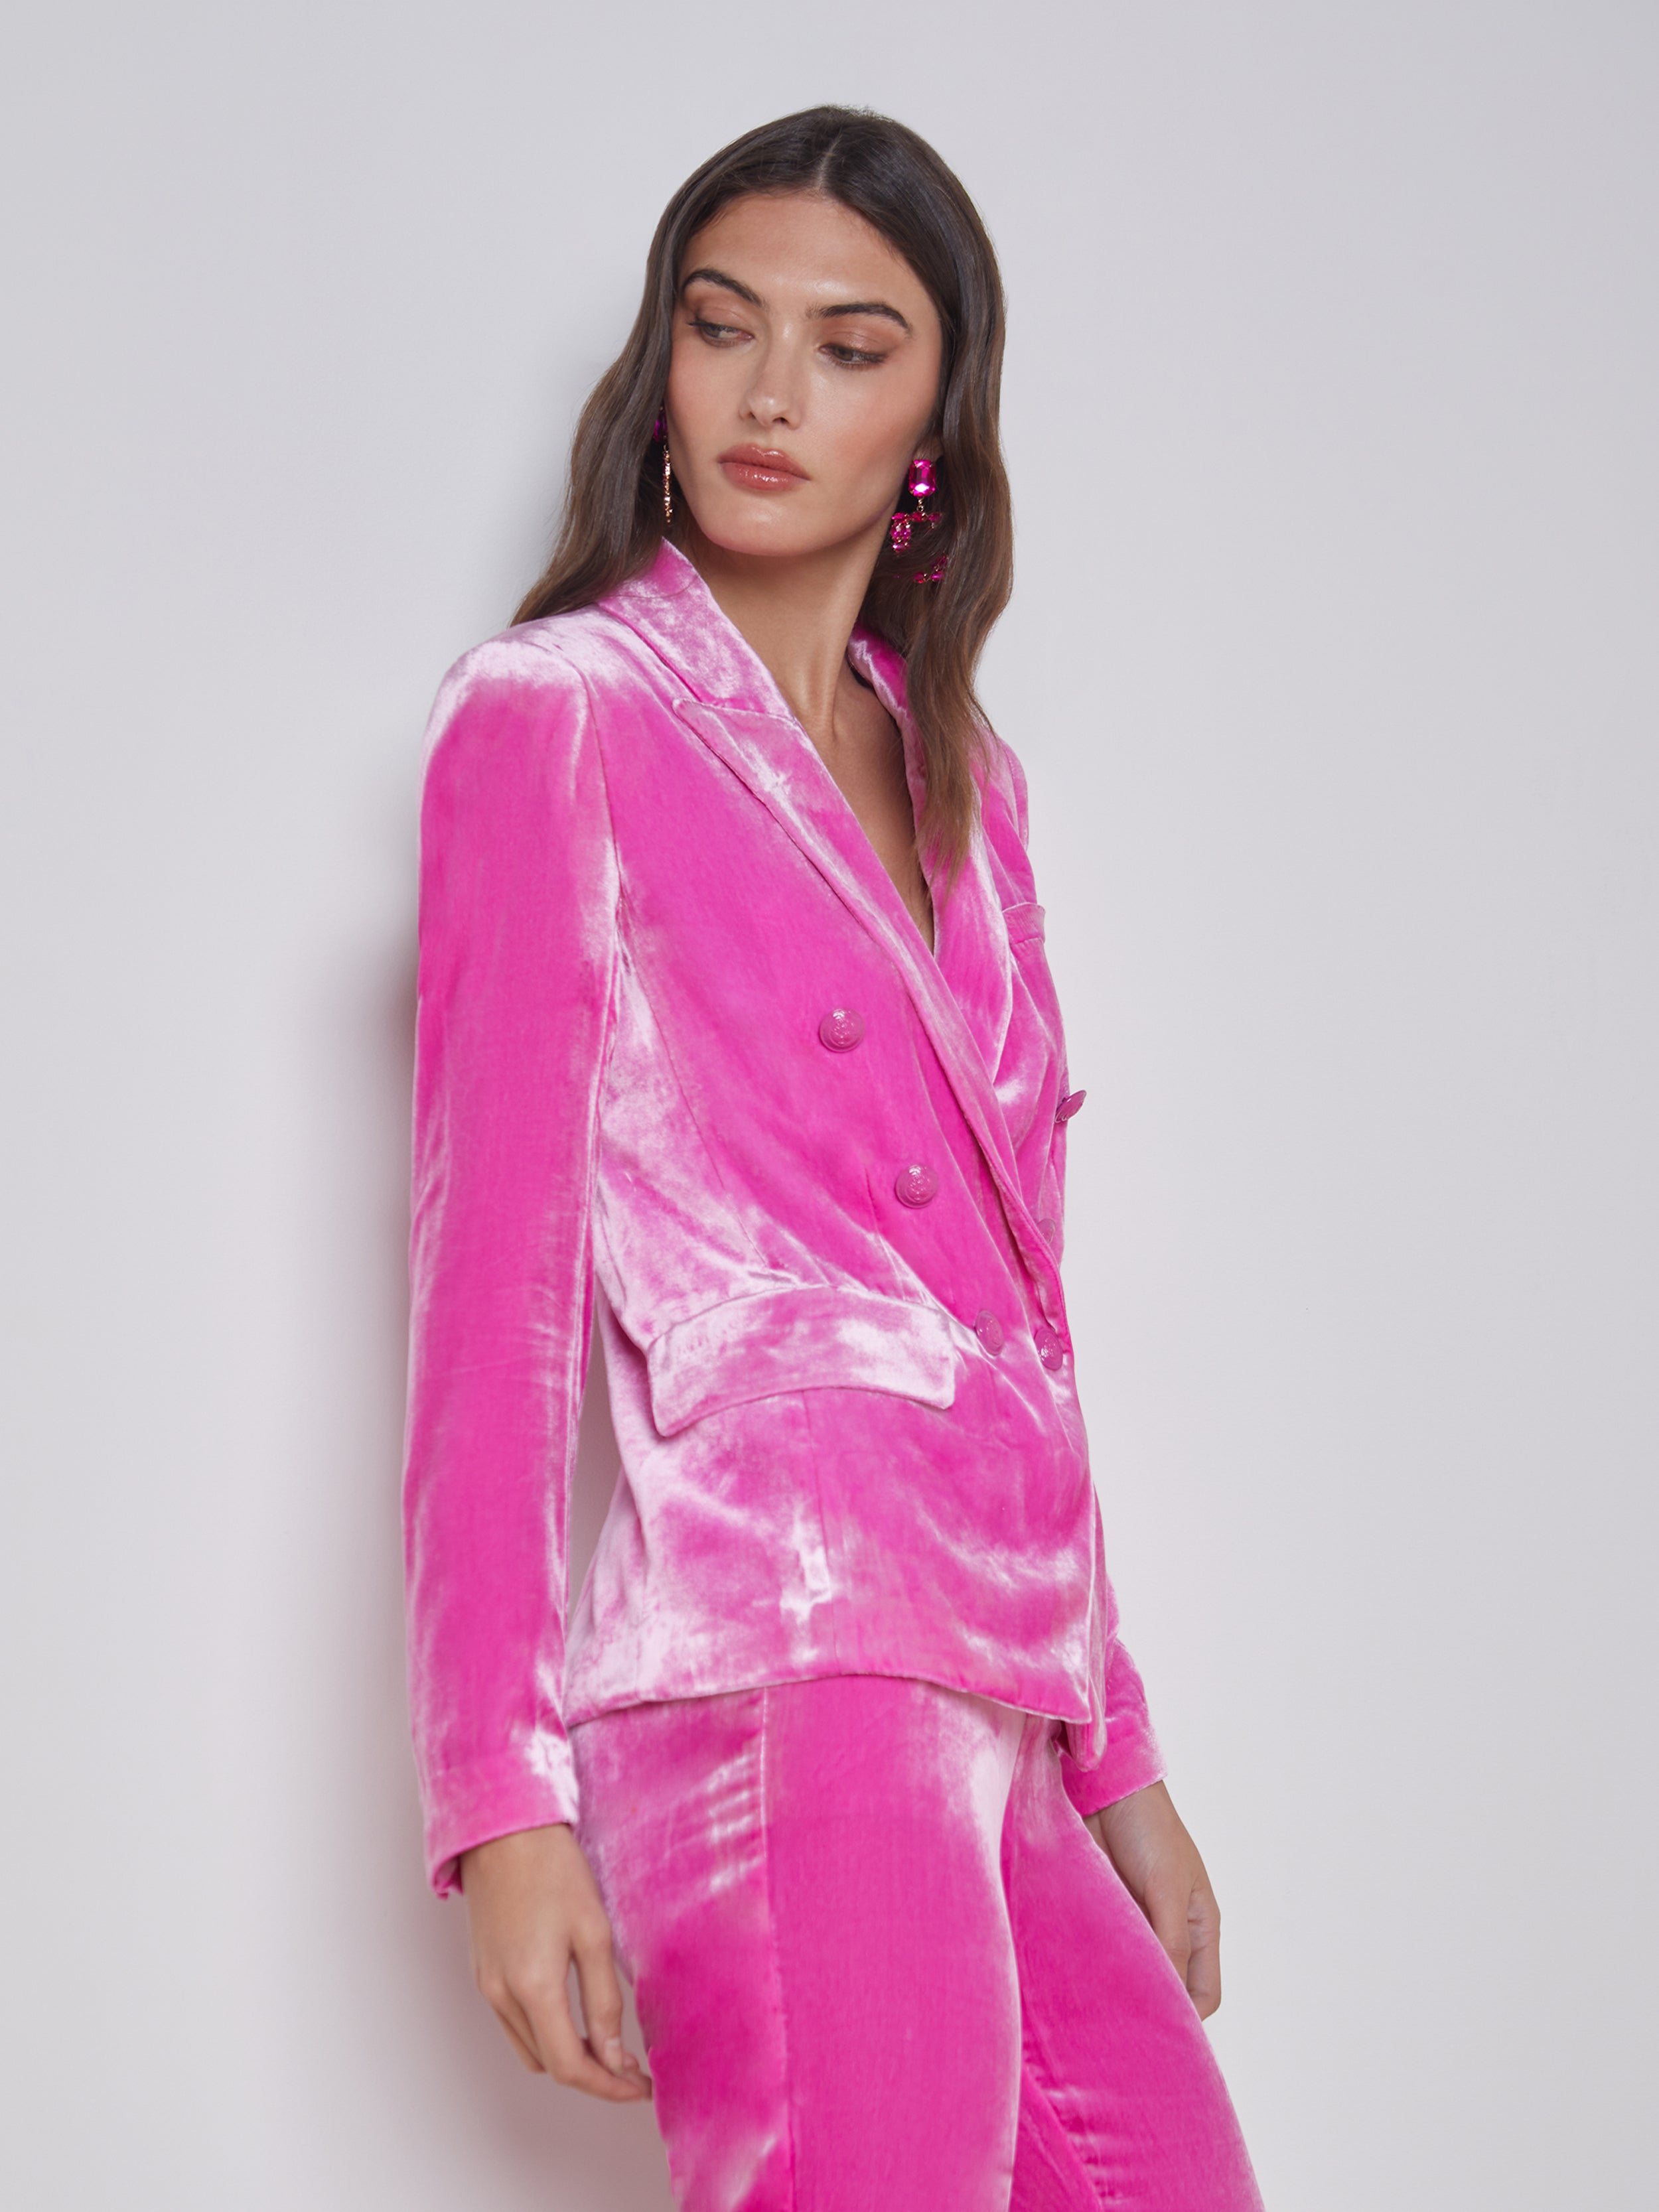 L'AGENCE Kenzie Velvet Blazer in Hot Pink